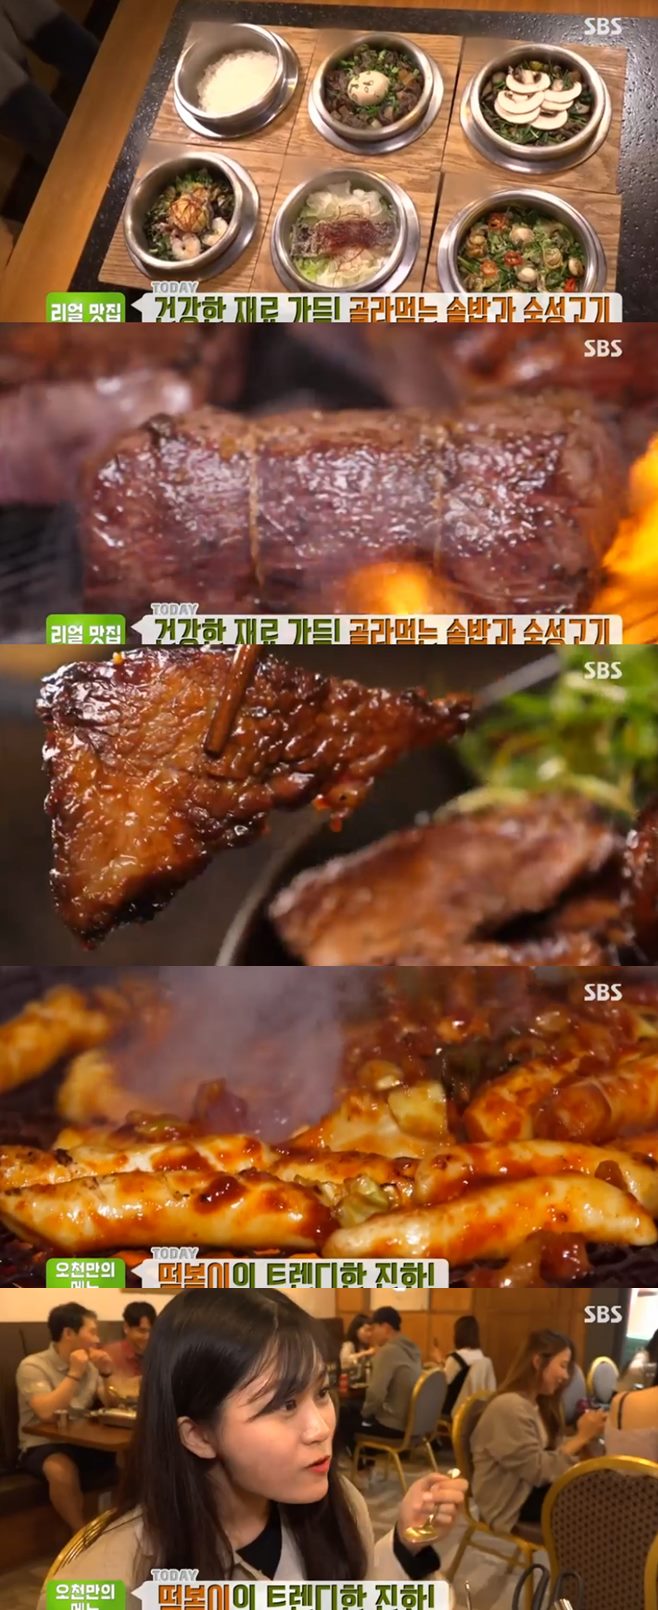 ‘생방송투데이’ 롱곱떡전골(압구정곱떡)+직화떡볶이(엉클스)+육솥밥(휴135) 맛집